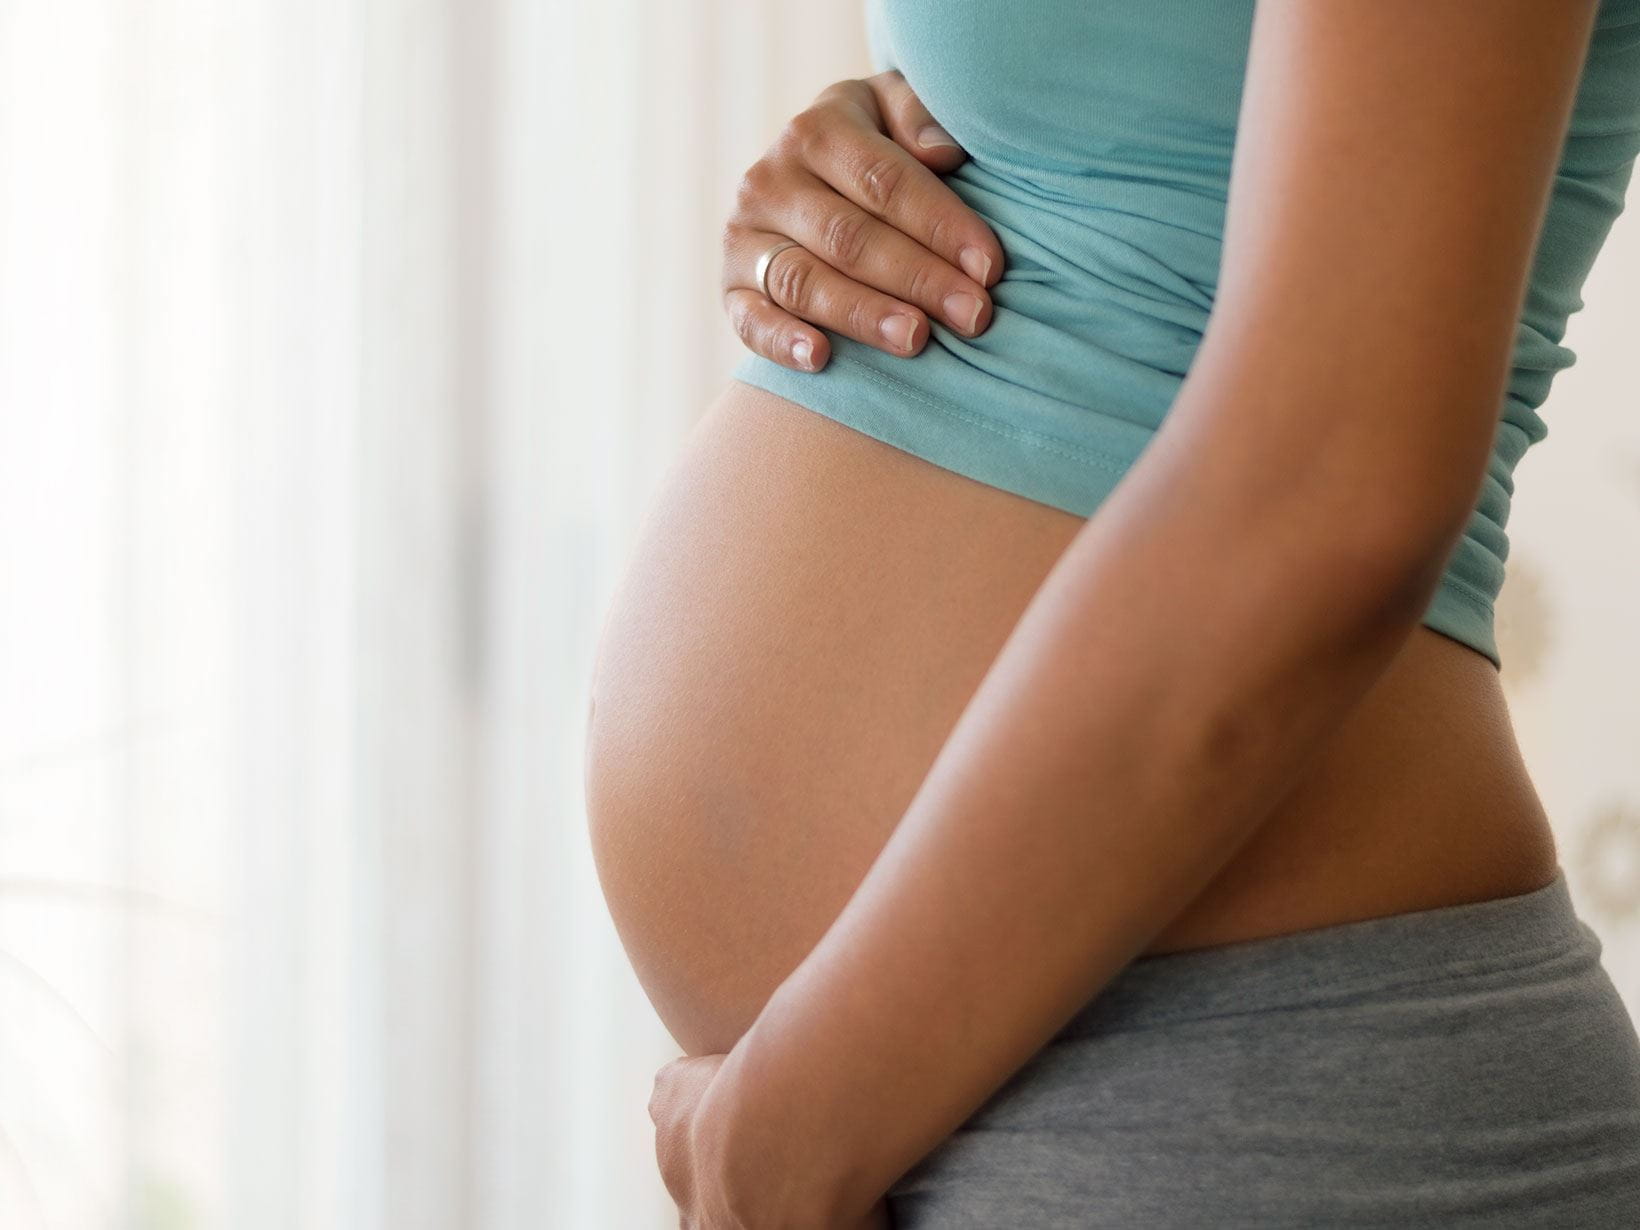 Comment faire la différence entre un ventre gonflé et une grossesse ? - La  Santé Au Quotidien